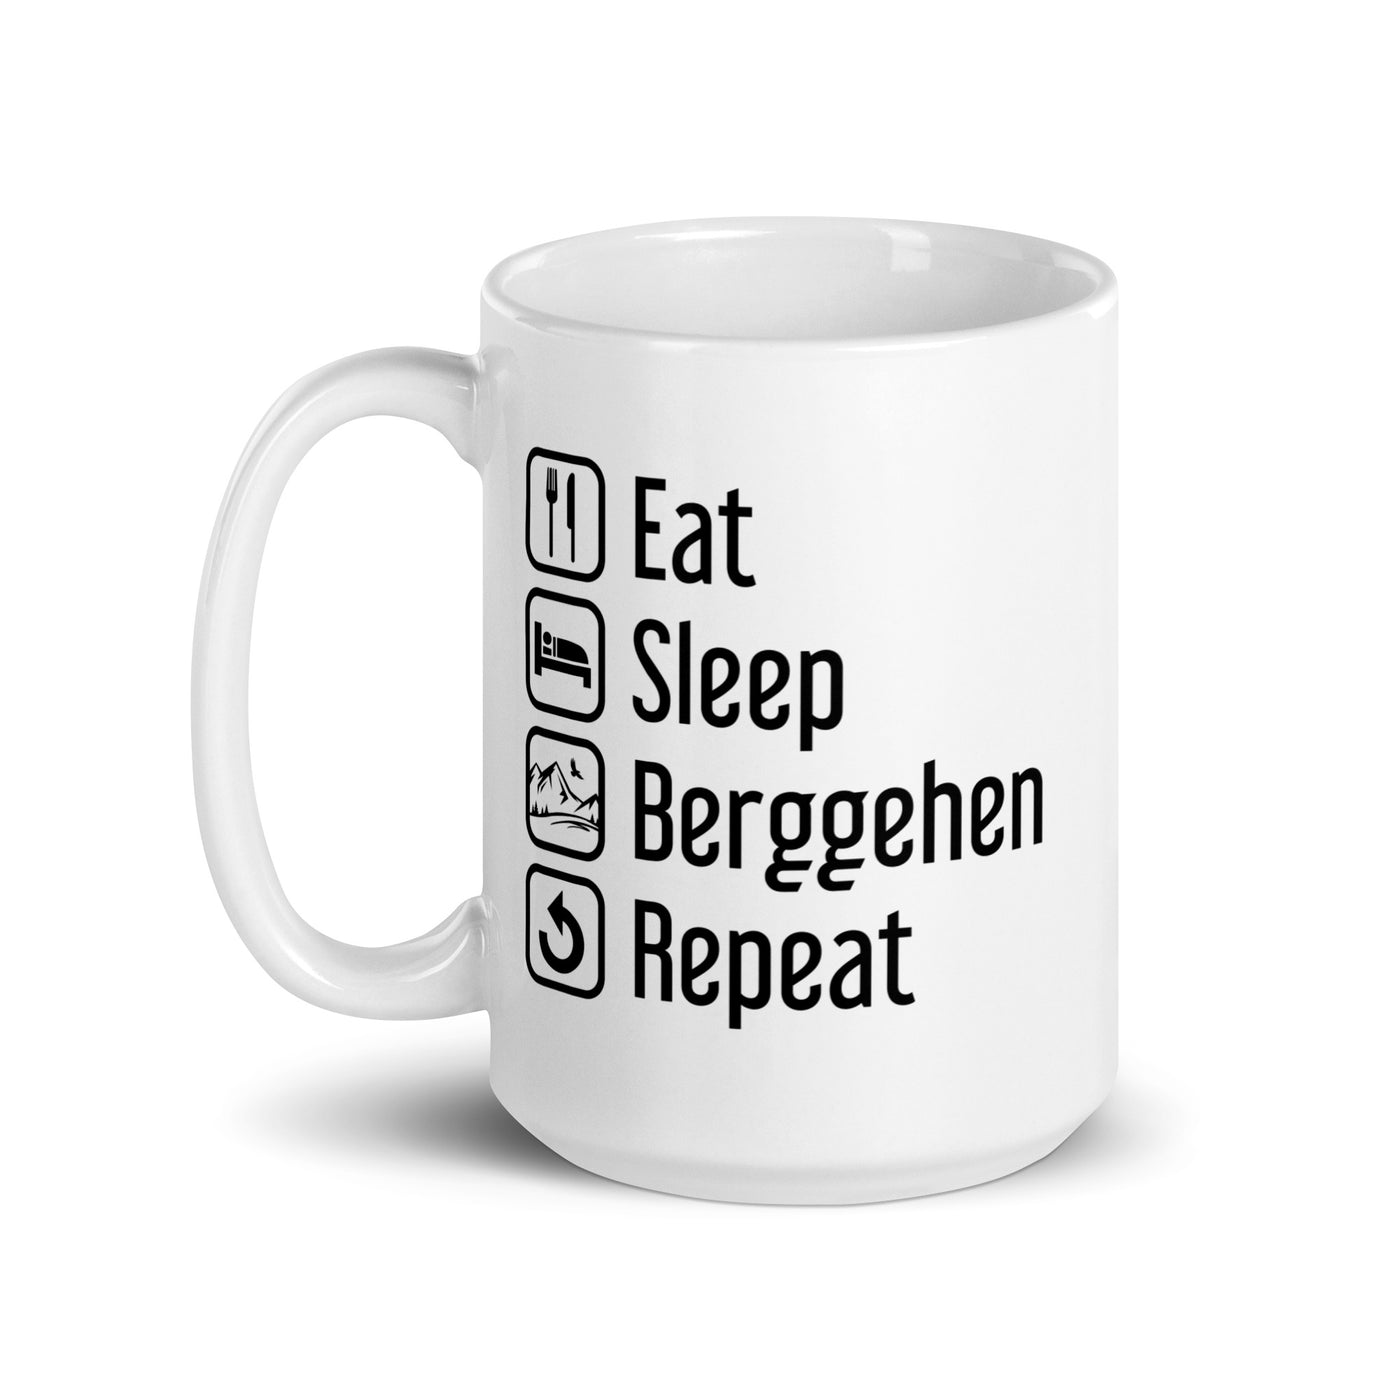 Eat Sleep Berggehen Repeat - Tasse berge